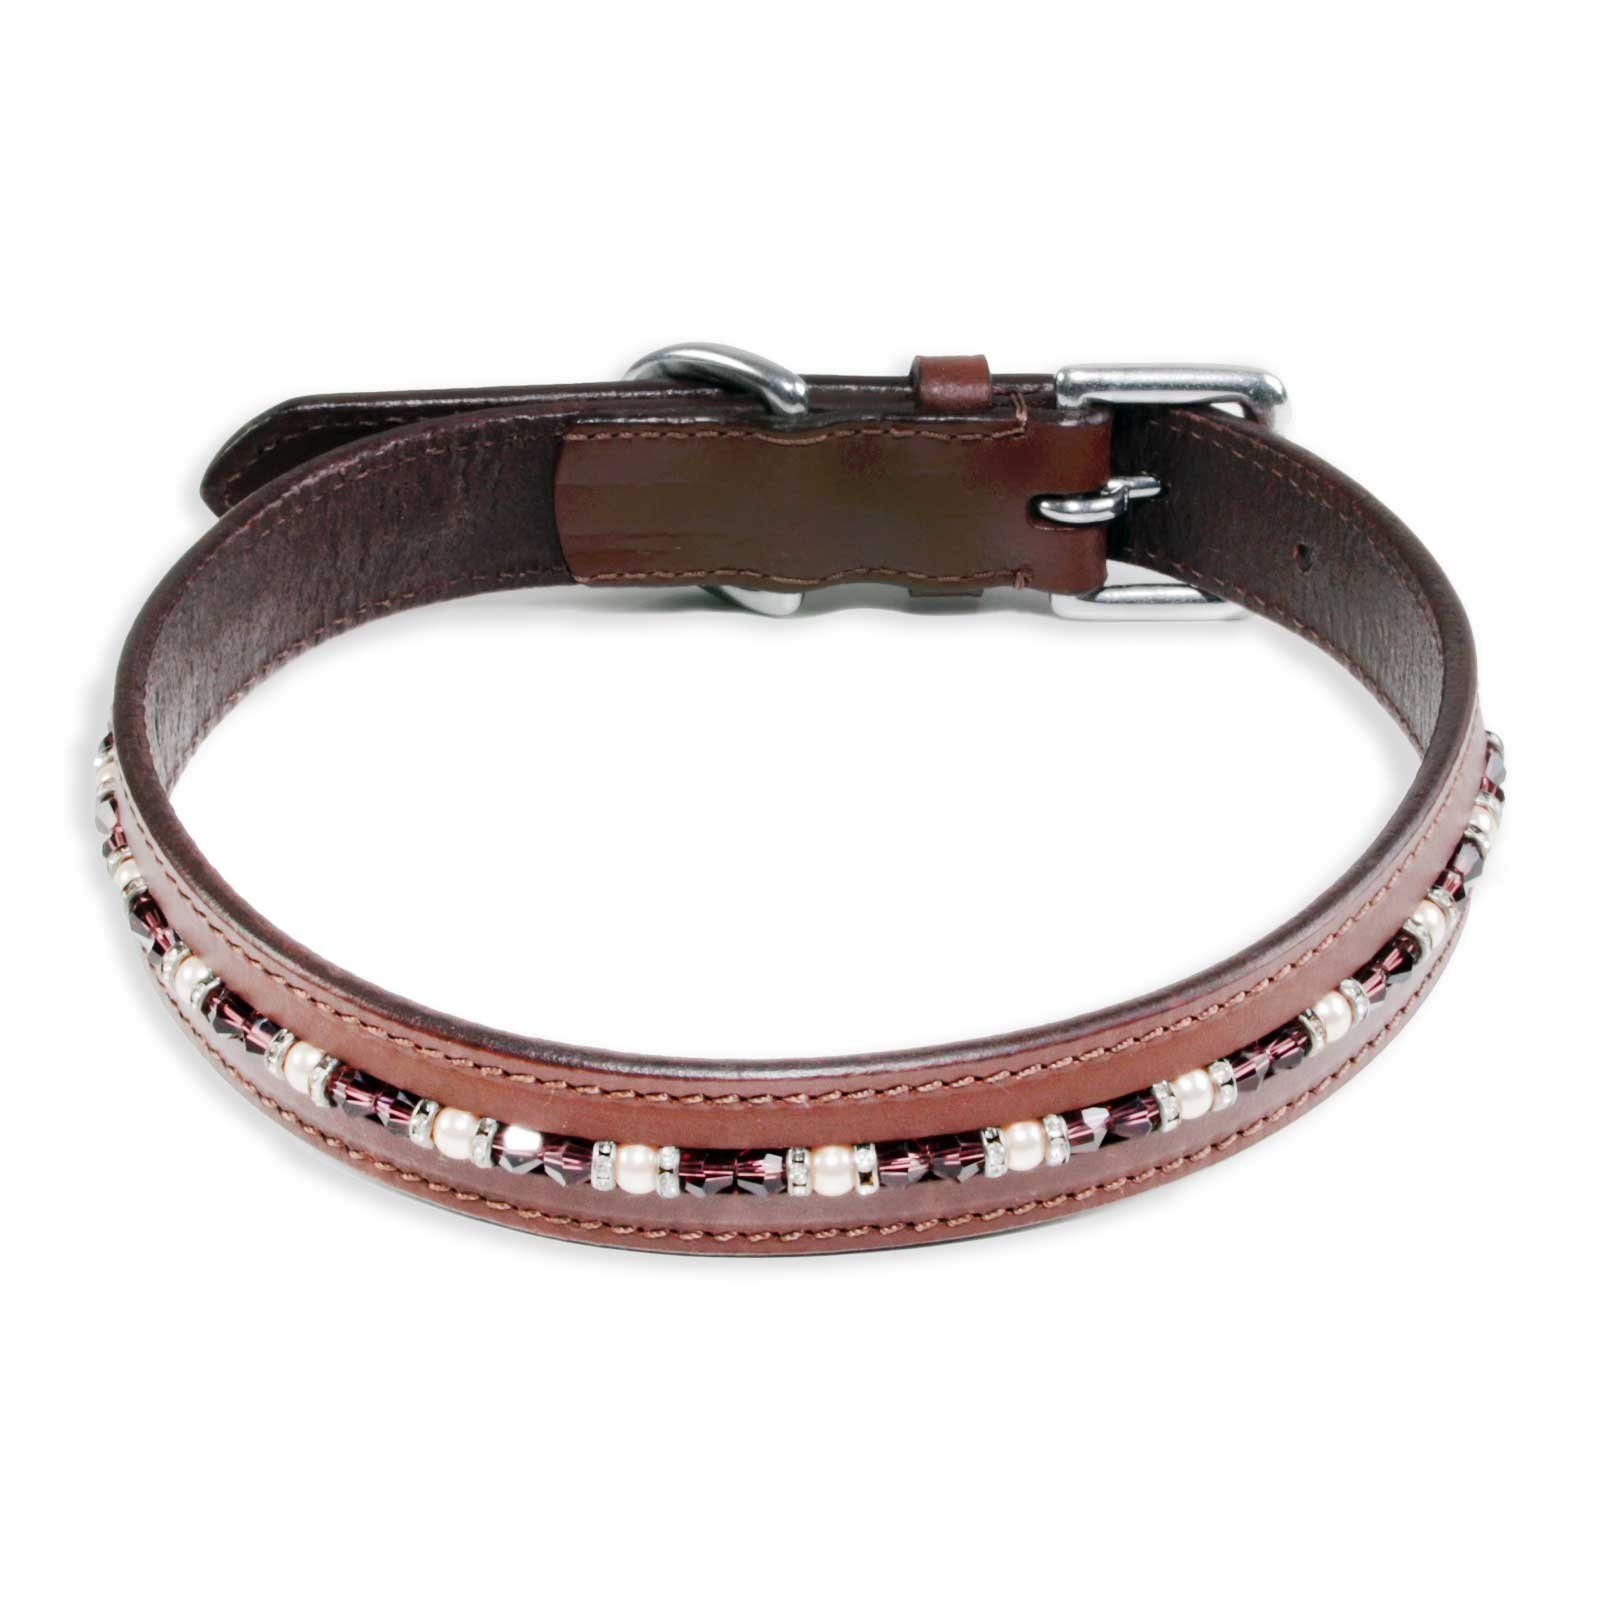 Monkimau Hunde-Halsband Halsband für Hunde Leder Halsband Hund braun mit Swarovski Kristallen, Leder